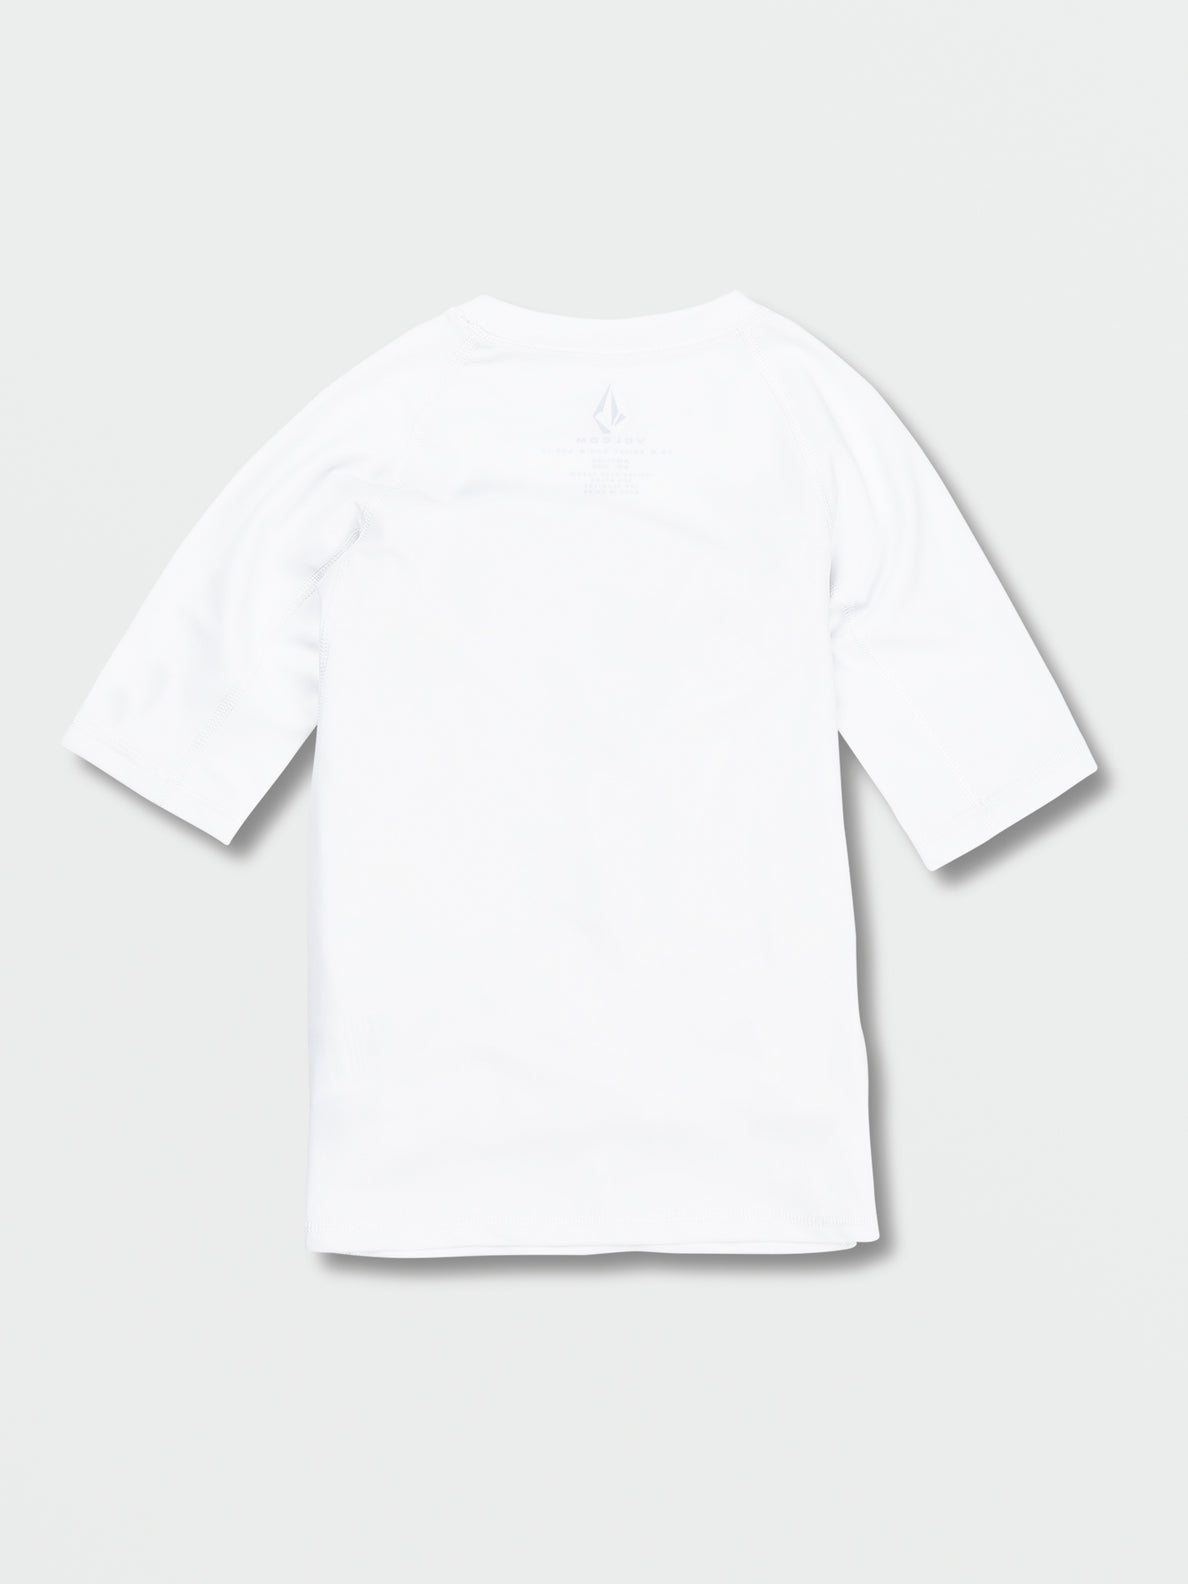 Big Boys Lido Solid Short Sleeve UPF 50 Rashguard - White (C9112302_WHT) [B]